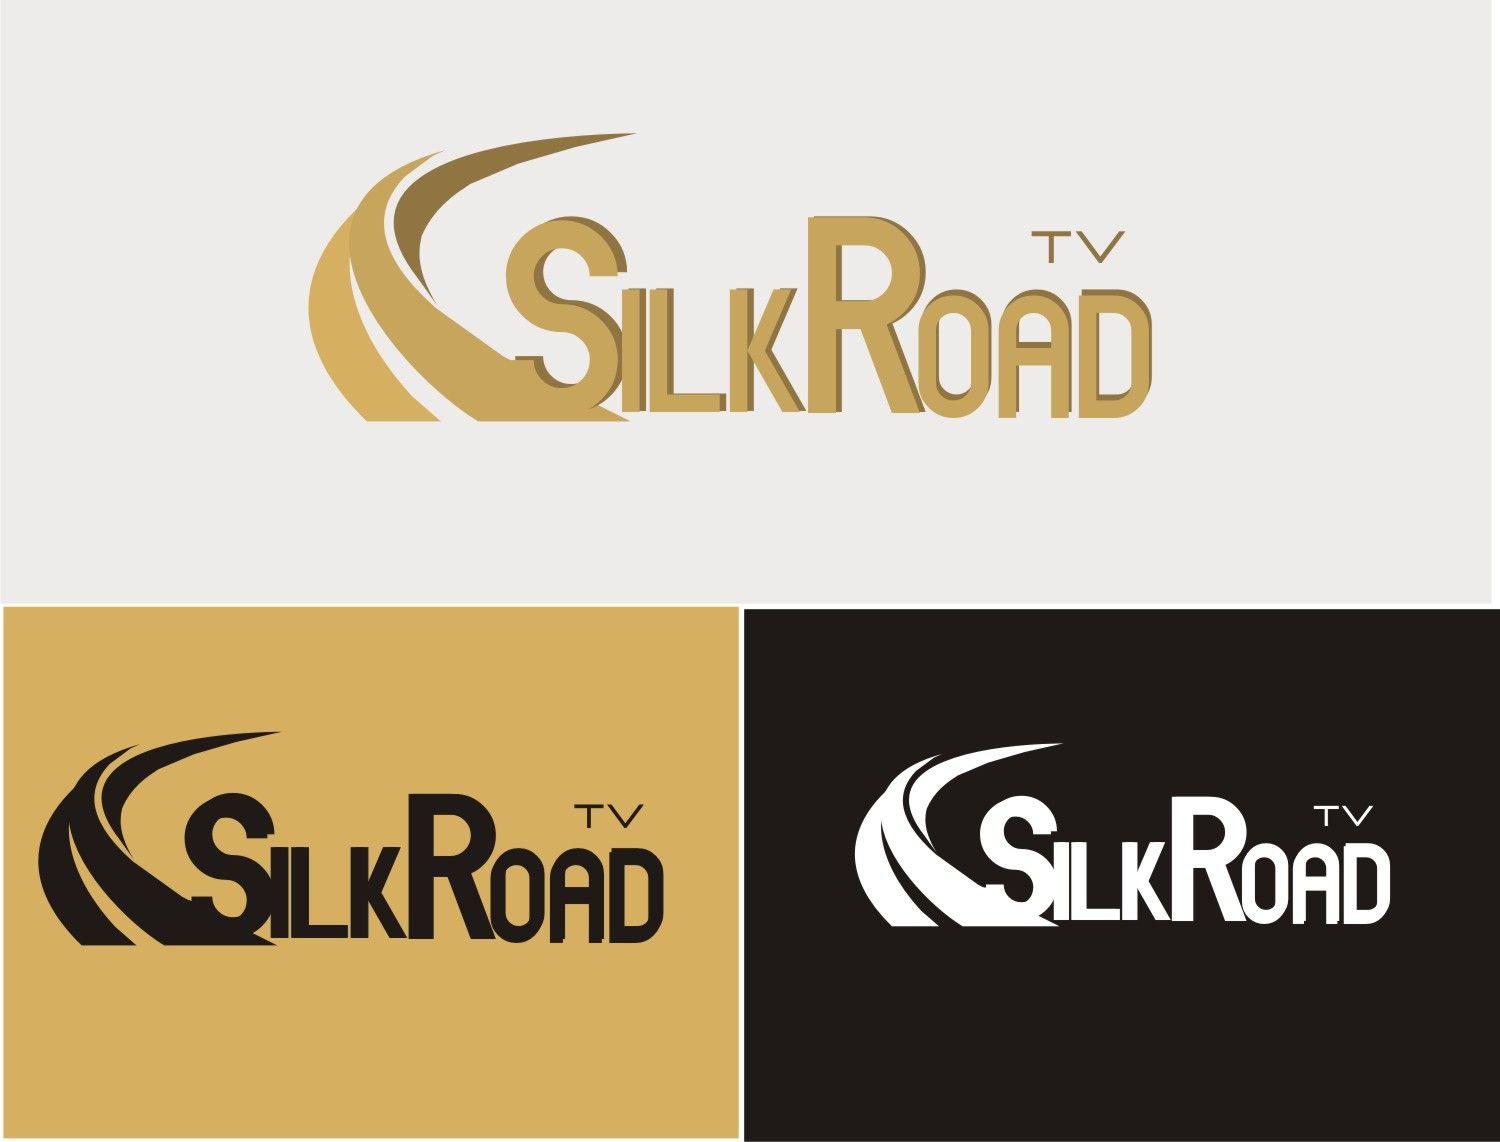 Silkroad Logo - Professional, Bold, Television Station Logo Design for Silk Road TV